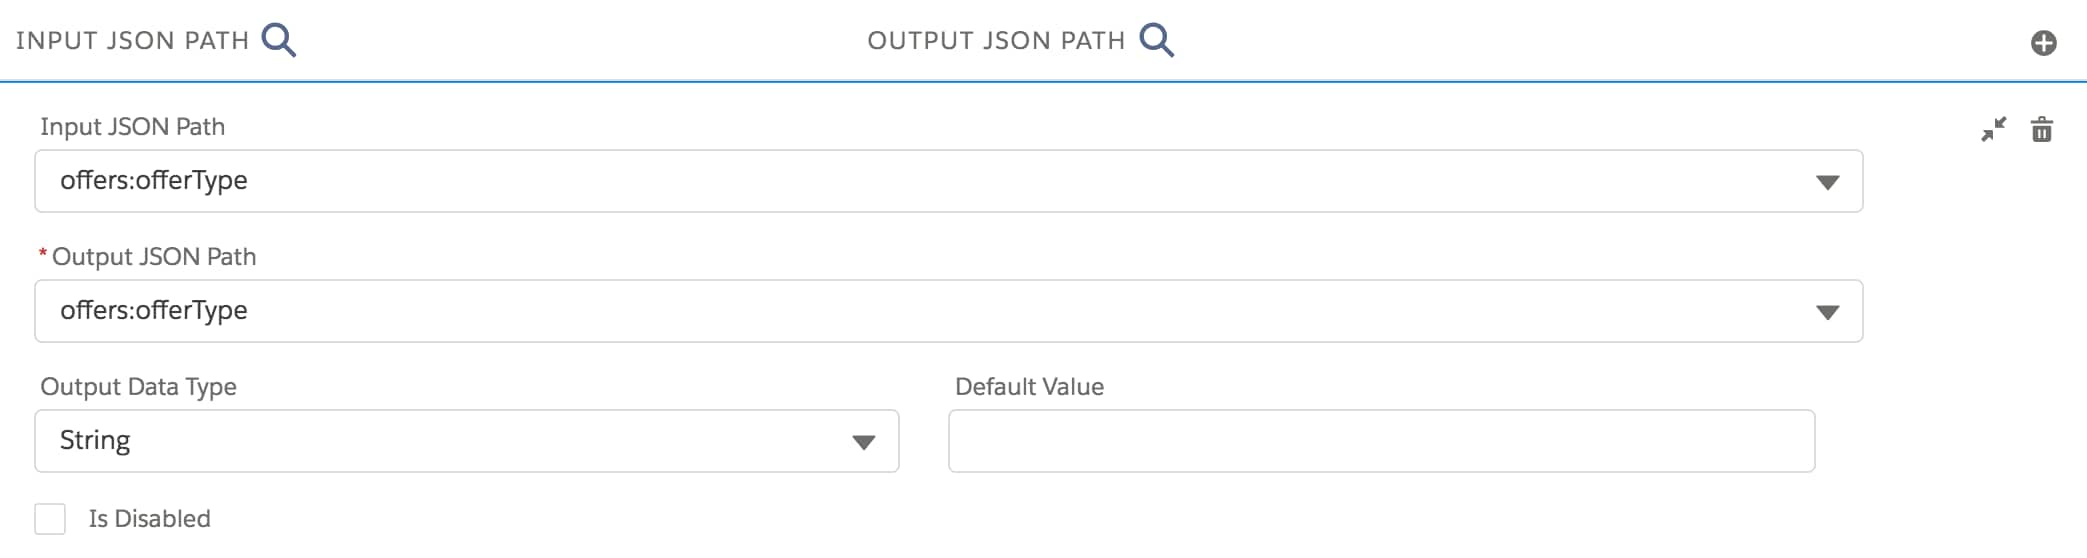 Output JSON Path